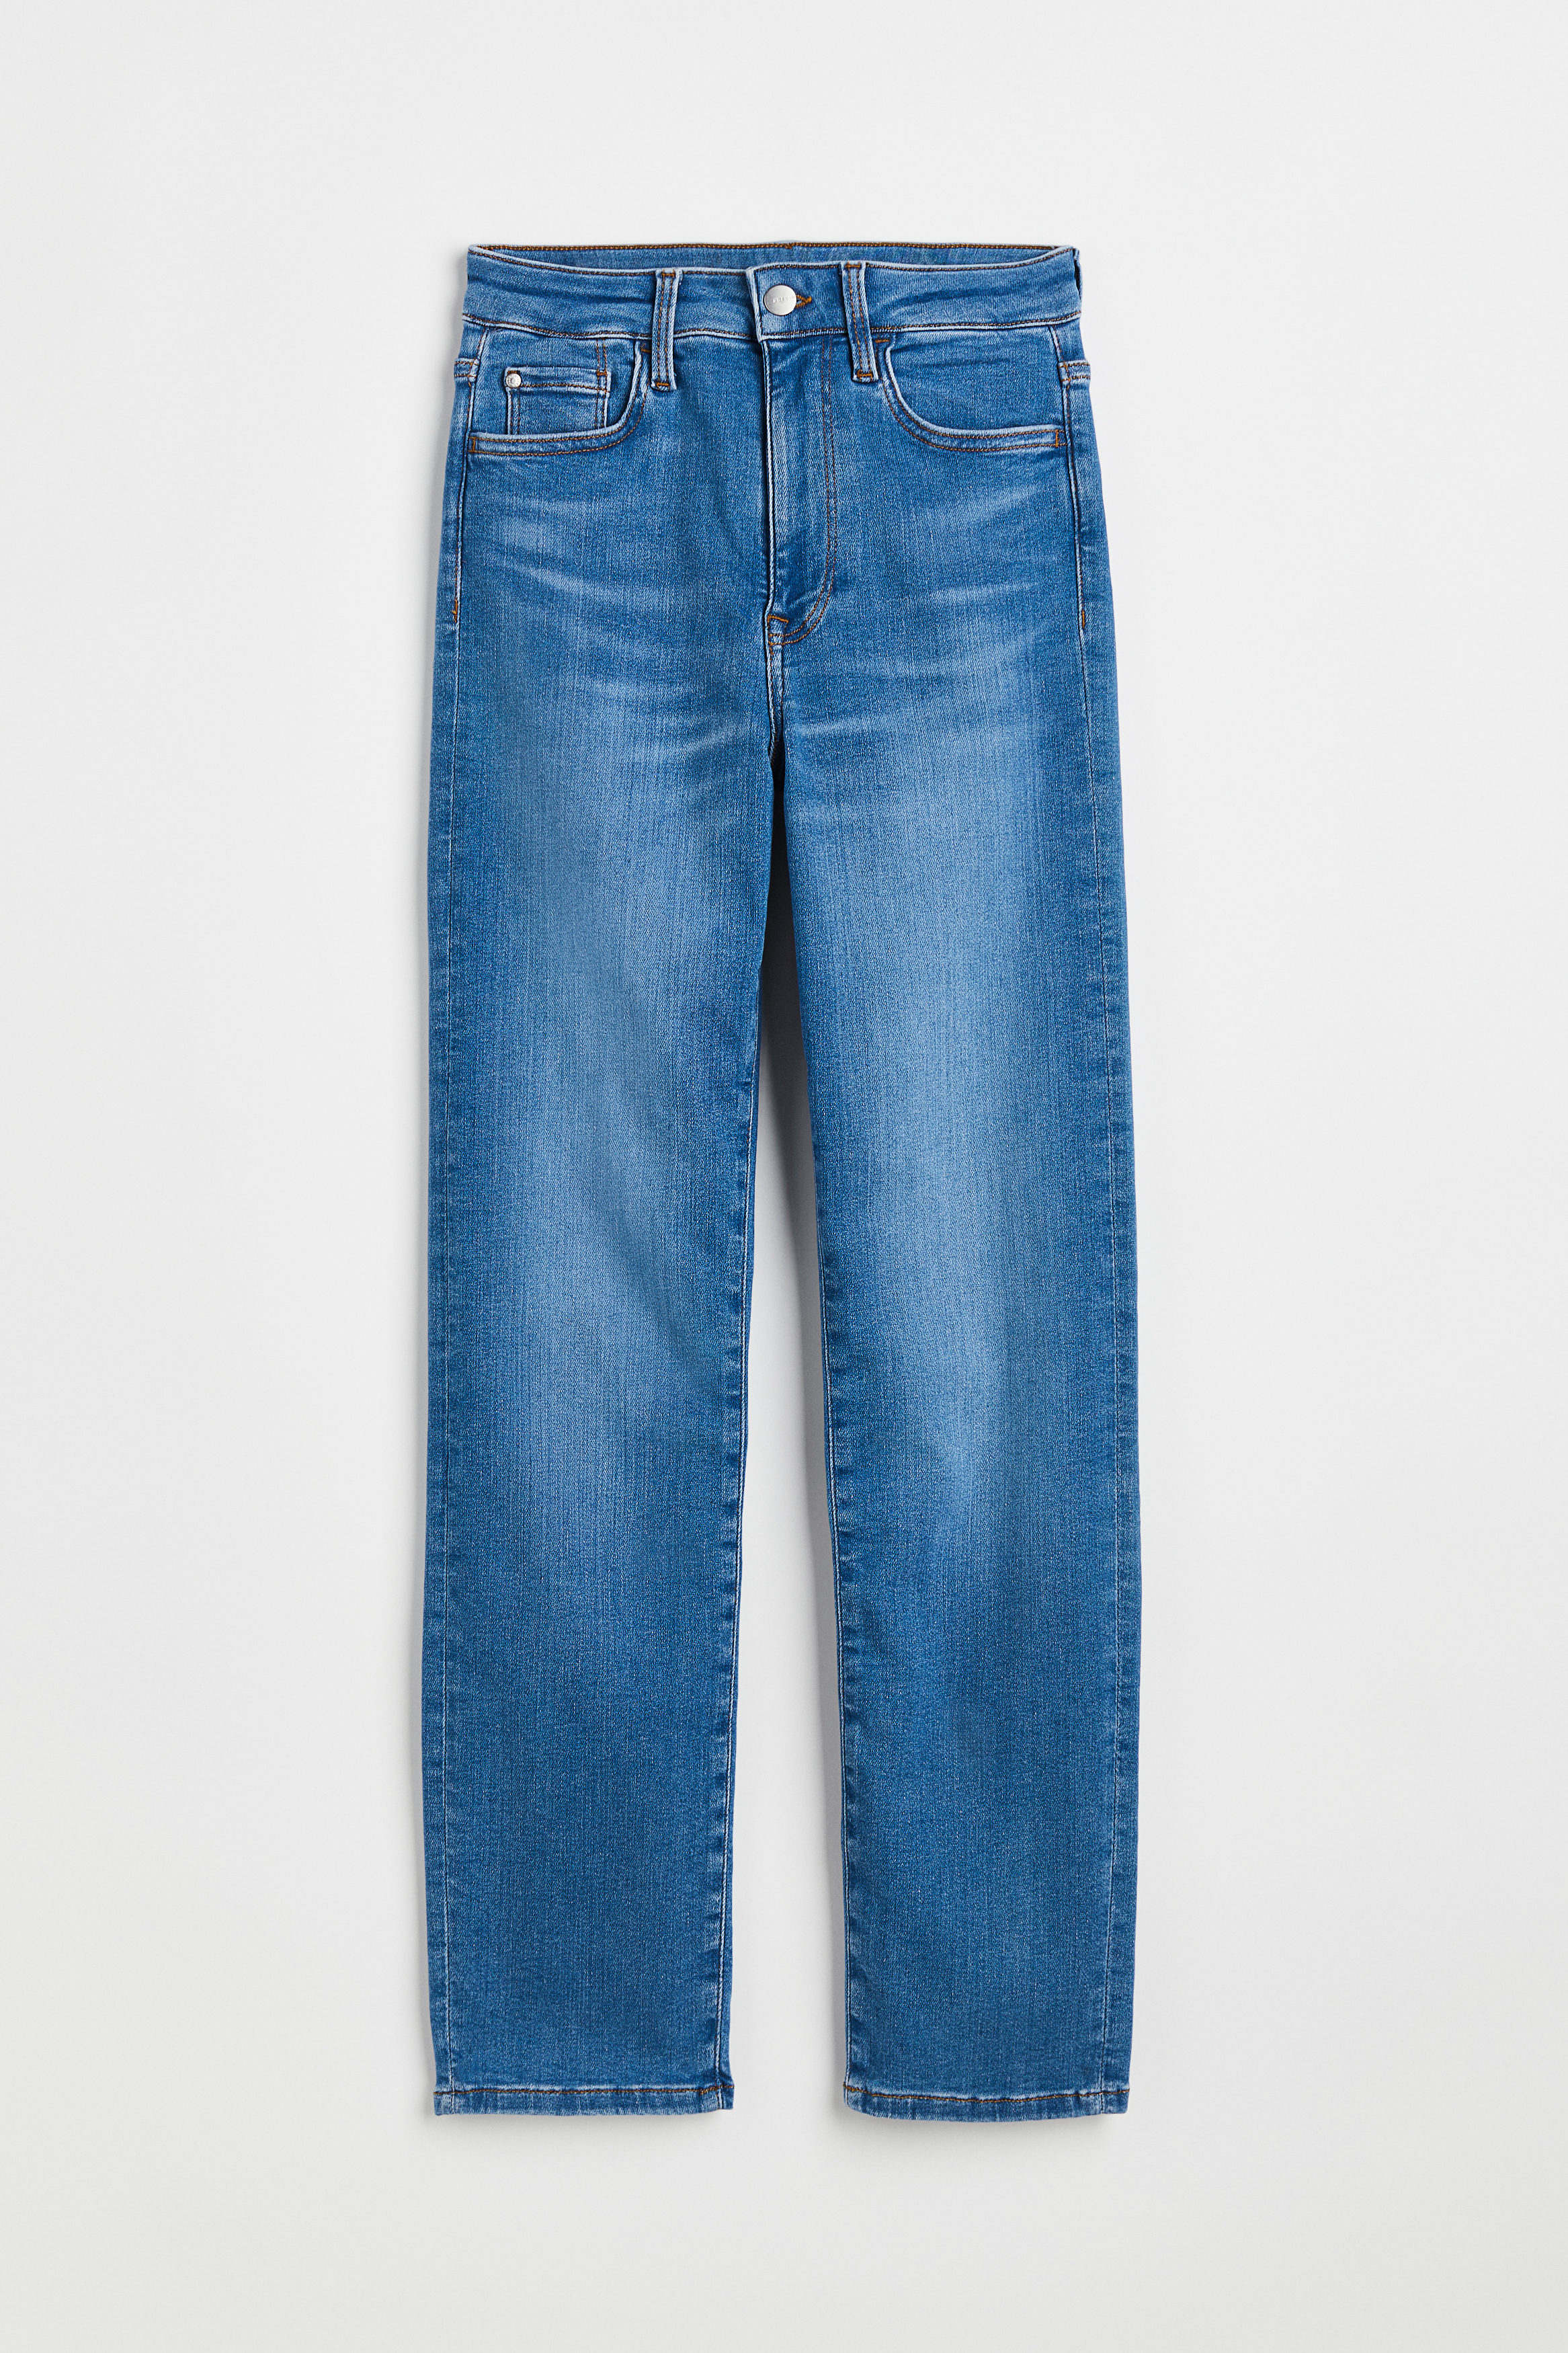 Billede af H&M True To You Slim High Jeans Denimblå, Skinny jeans. Farve: Denim blue 003 I størrelse XS